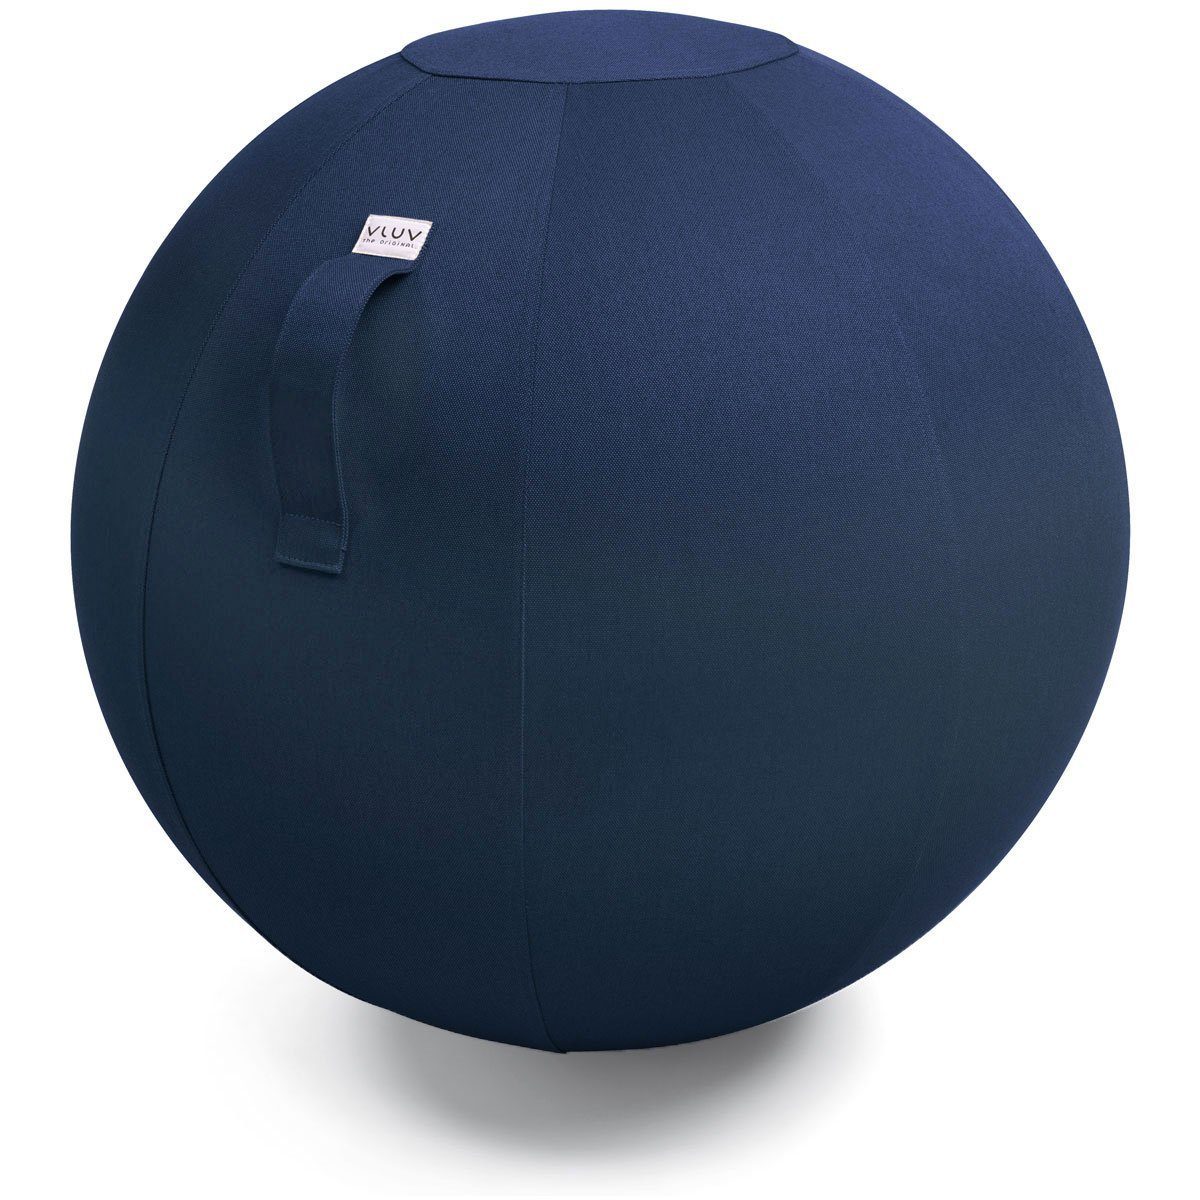 Blue Farbe: ergonomisches Möbelbezugsstoff, Zuhause, 60cm formstabil, Stoff-Sitzball, Tragegriff Ø Büro und 65cm, - Sitzmöbel robust mit und BOL (blau), Sitzball VLUV LEIV für Royal